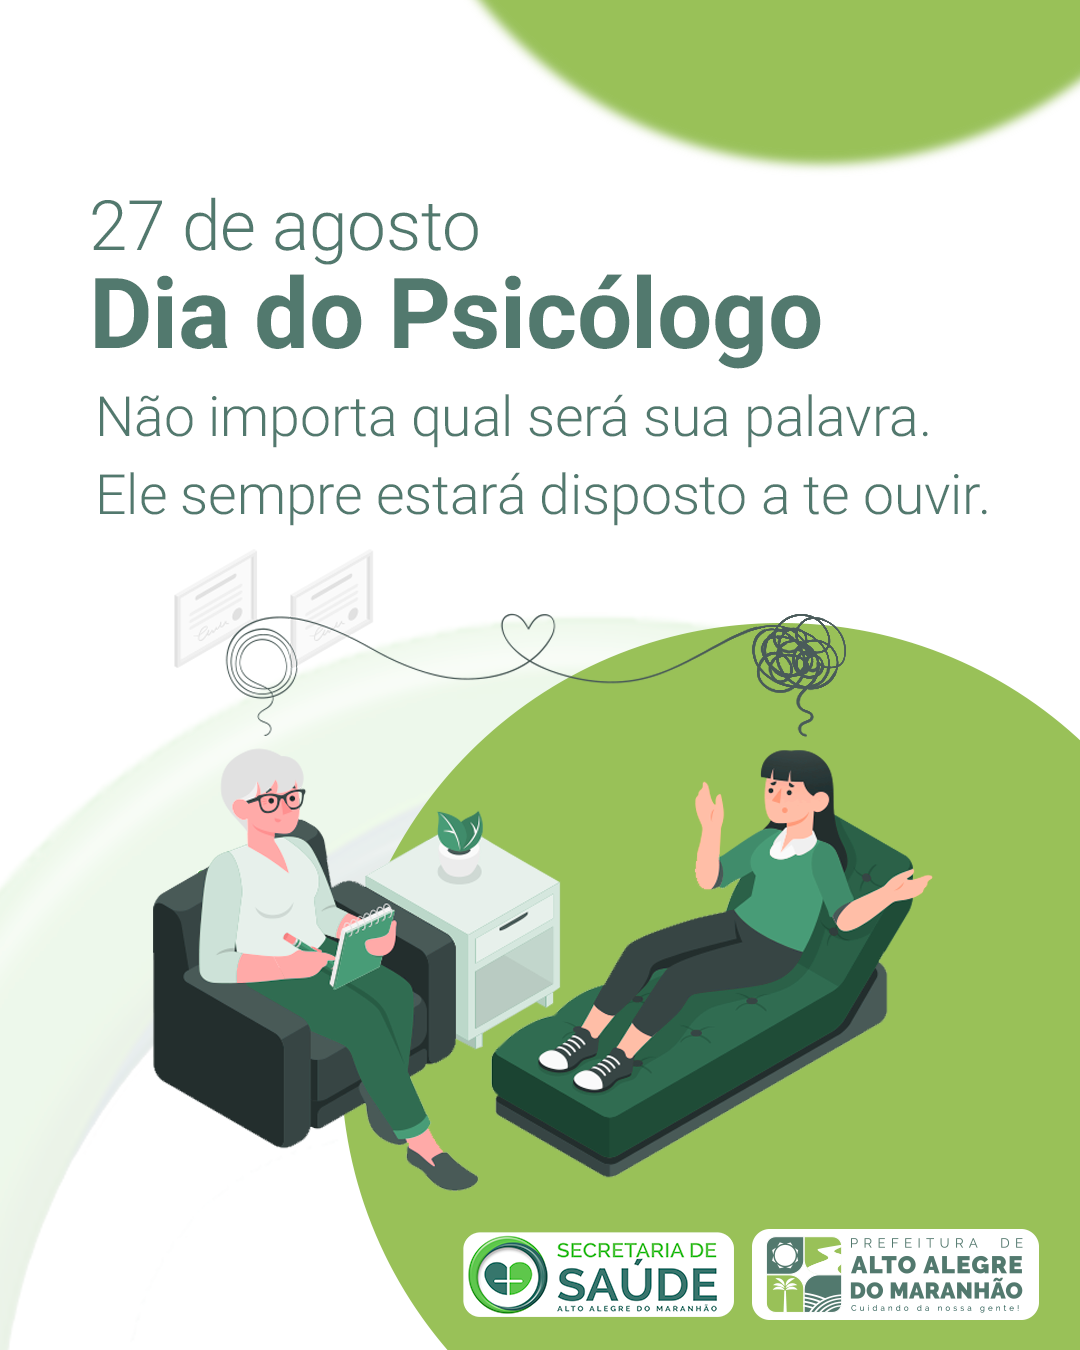 O Dia do Psicólogo é comemorado anualmente em 27 de agosto no Brasil